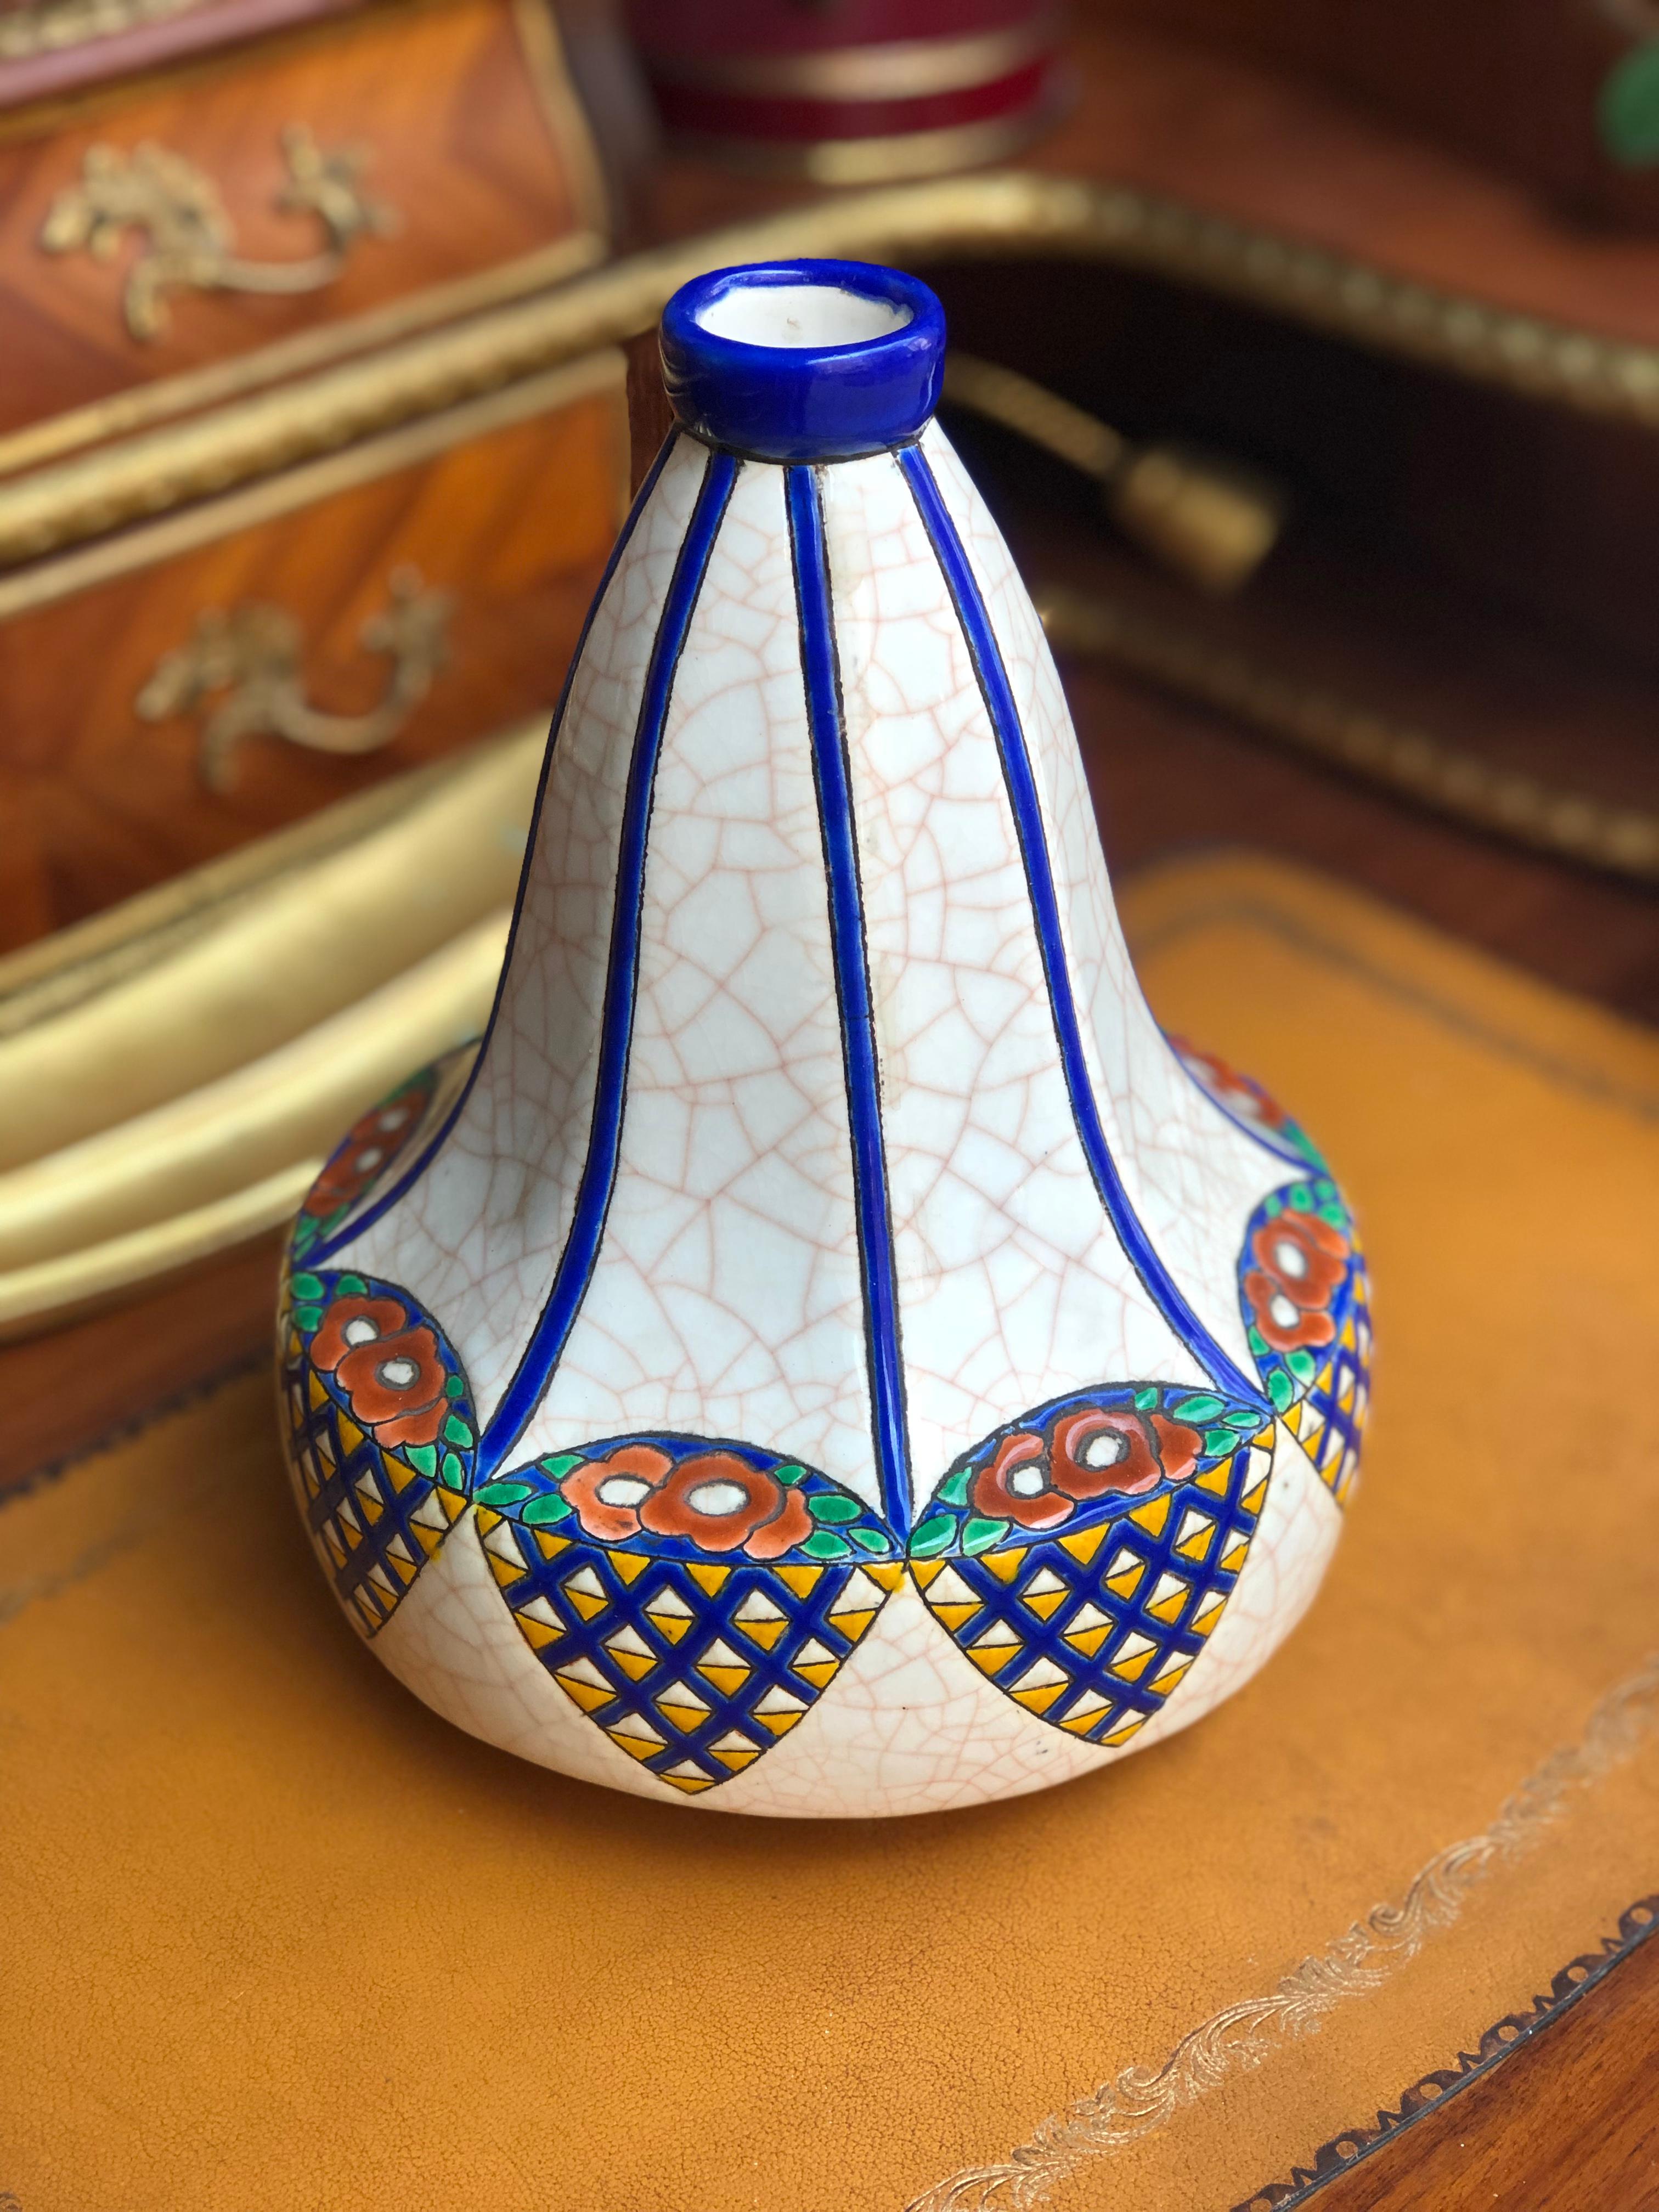 Longwy
Piriform Art Deco Vase mit geschliffenen Seiten aus Fayence, Dekor aus floralen und geometrischen Friesen, polychrome Cloisonné-Emaillen, cremefarbener Sockel mit Craquelé, signiert, Modell D 5053,
um 1930.